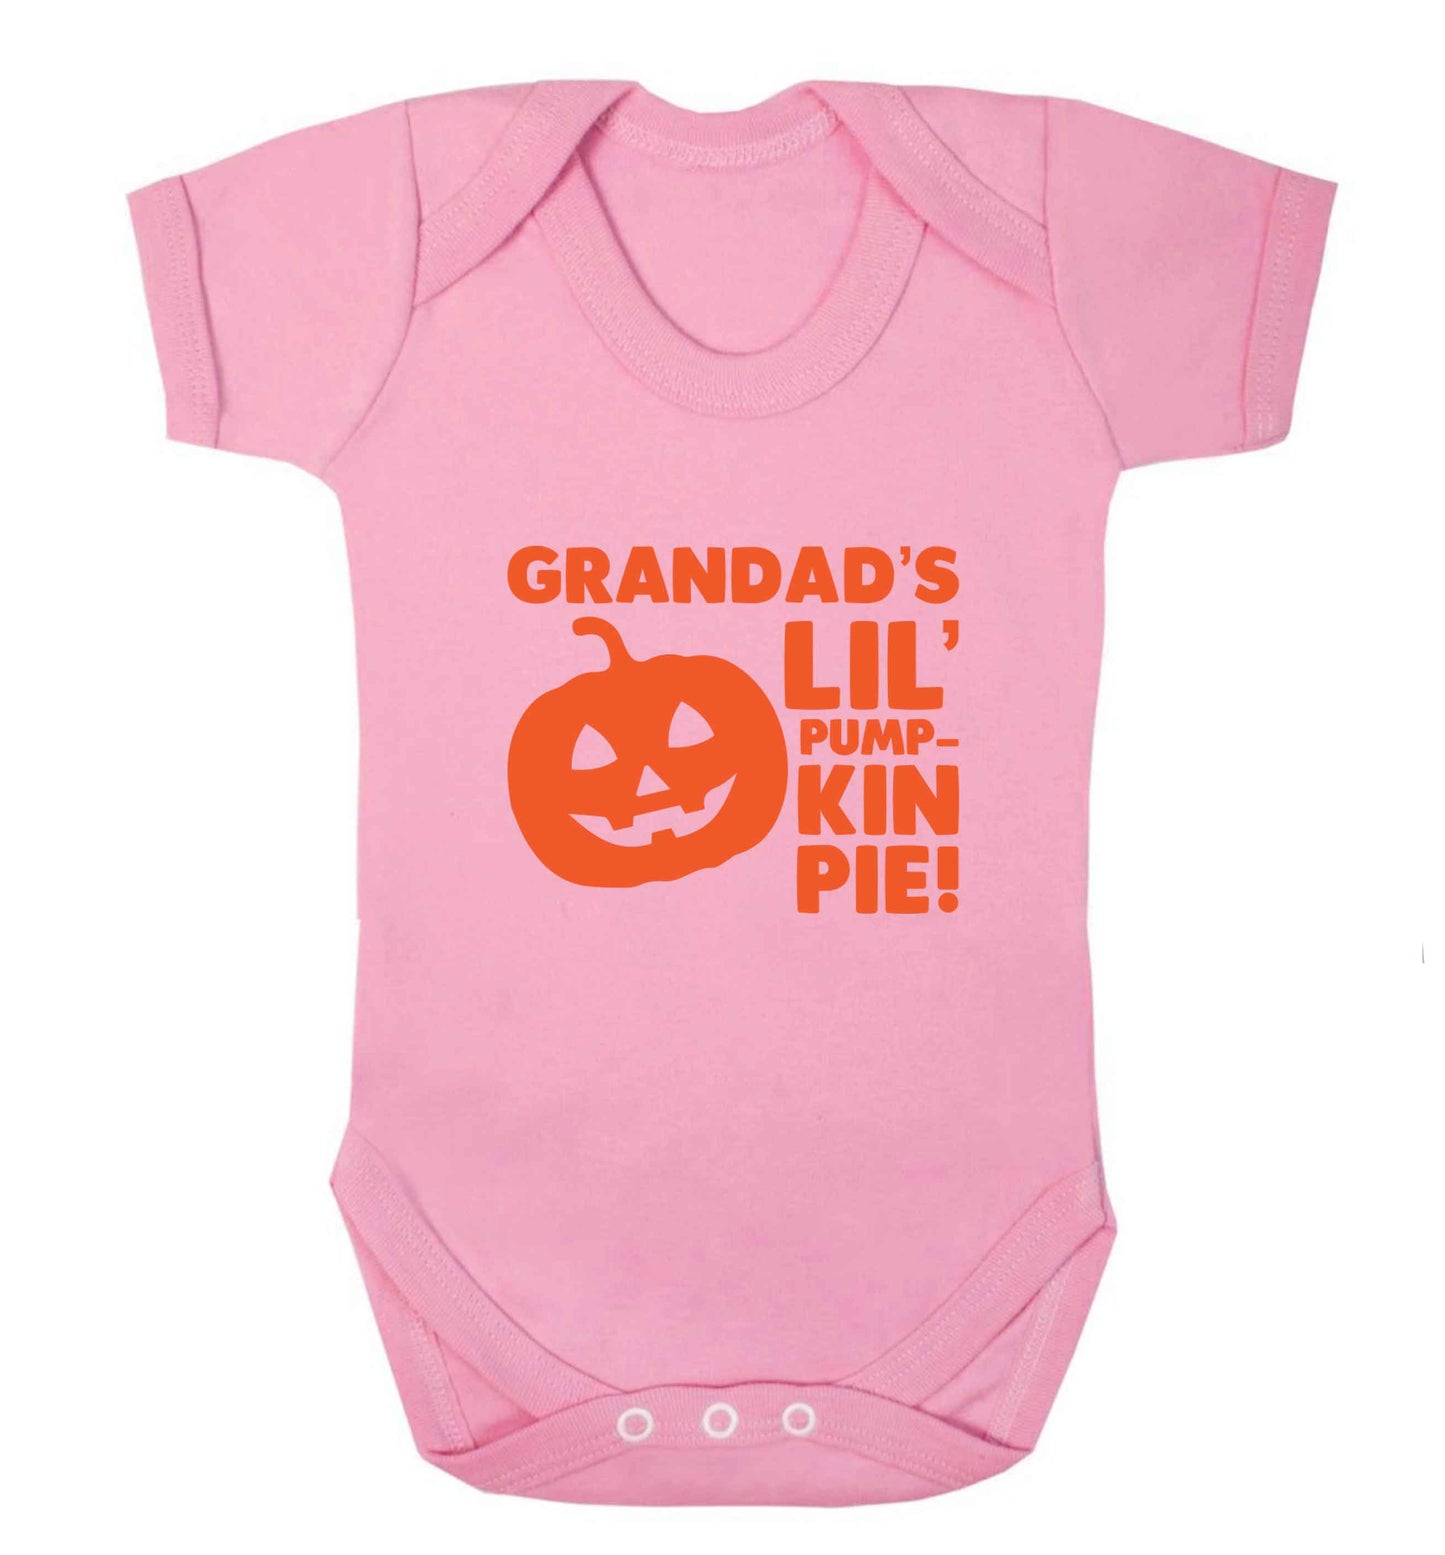 Grandad's lil' pumpkin pie baby vest pale pink 18-24 months